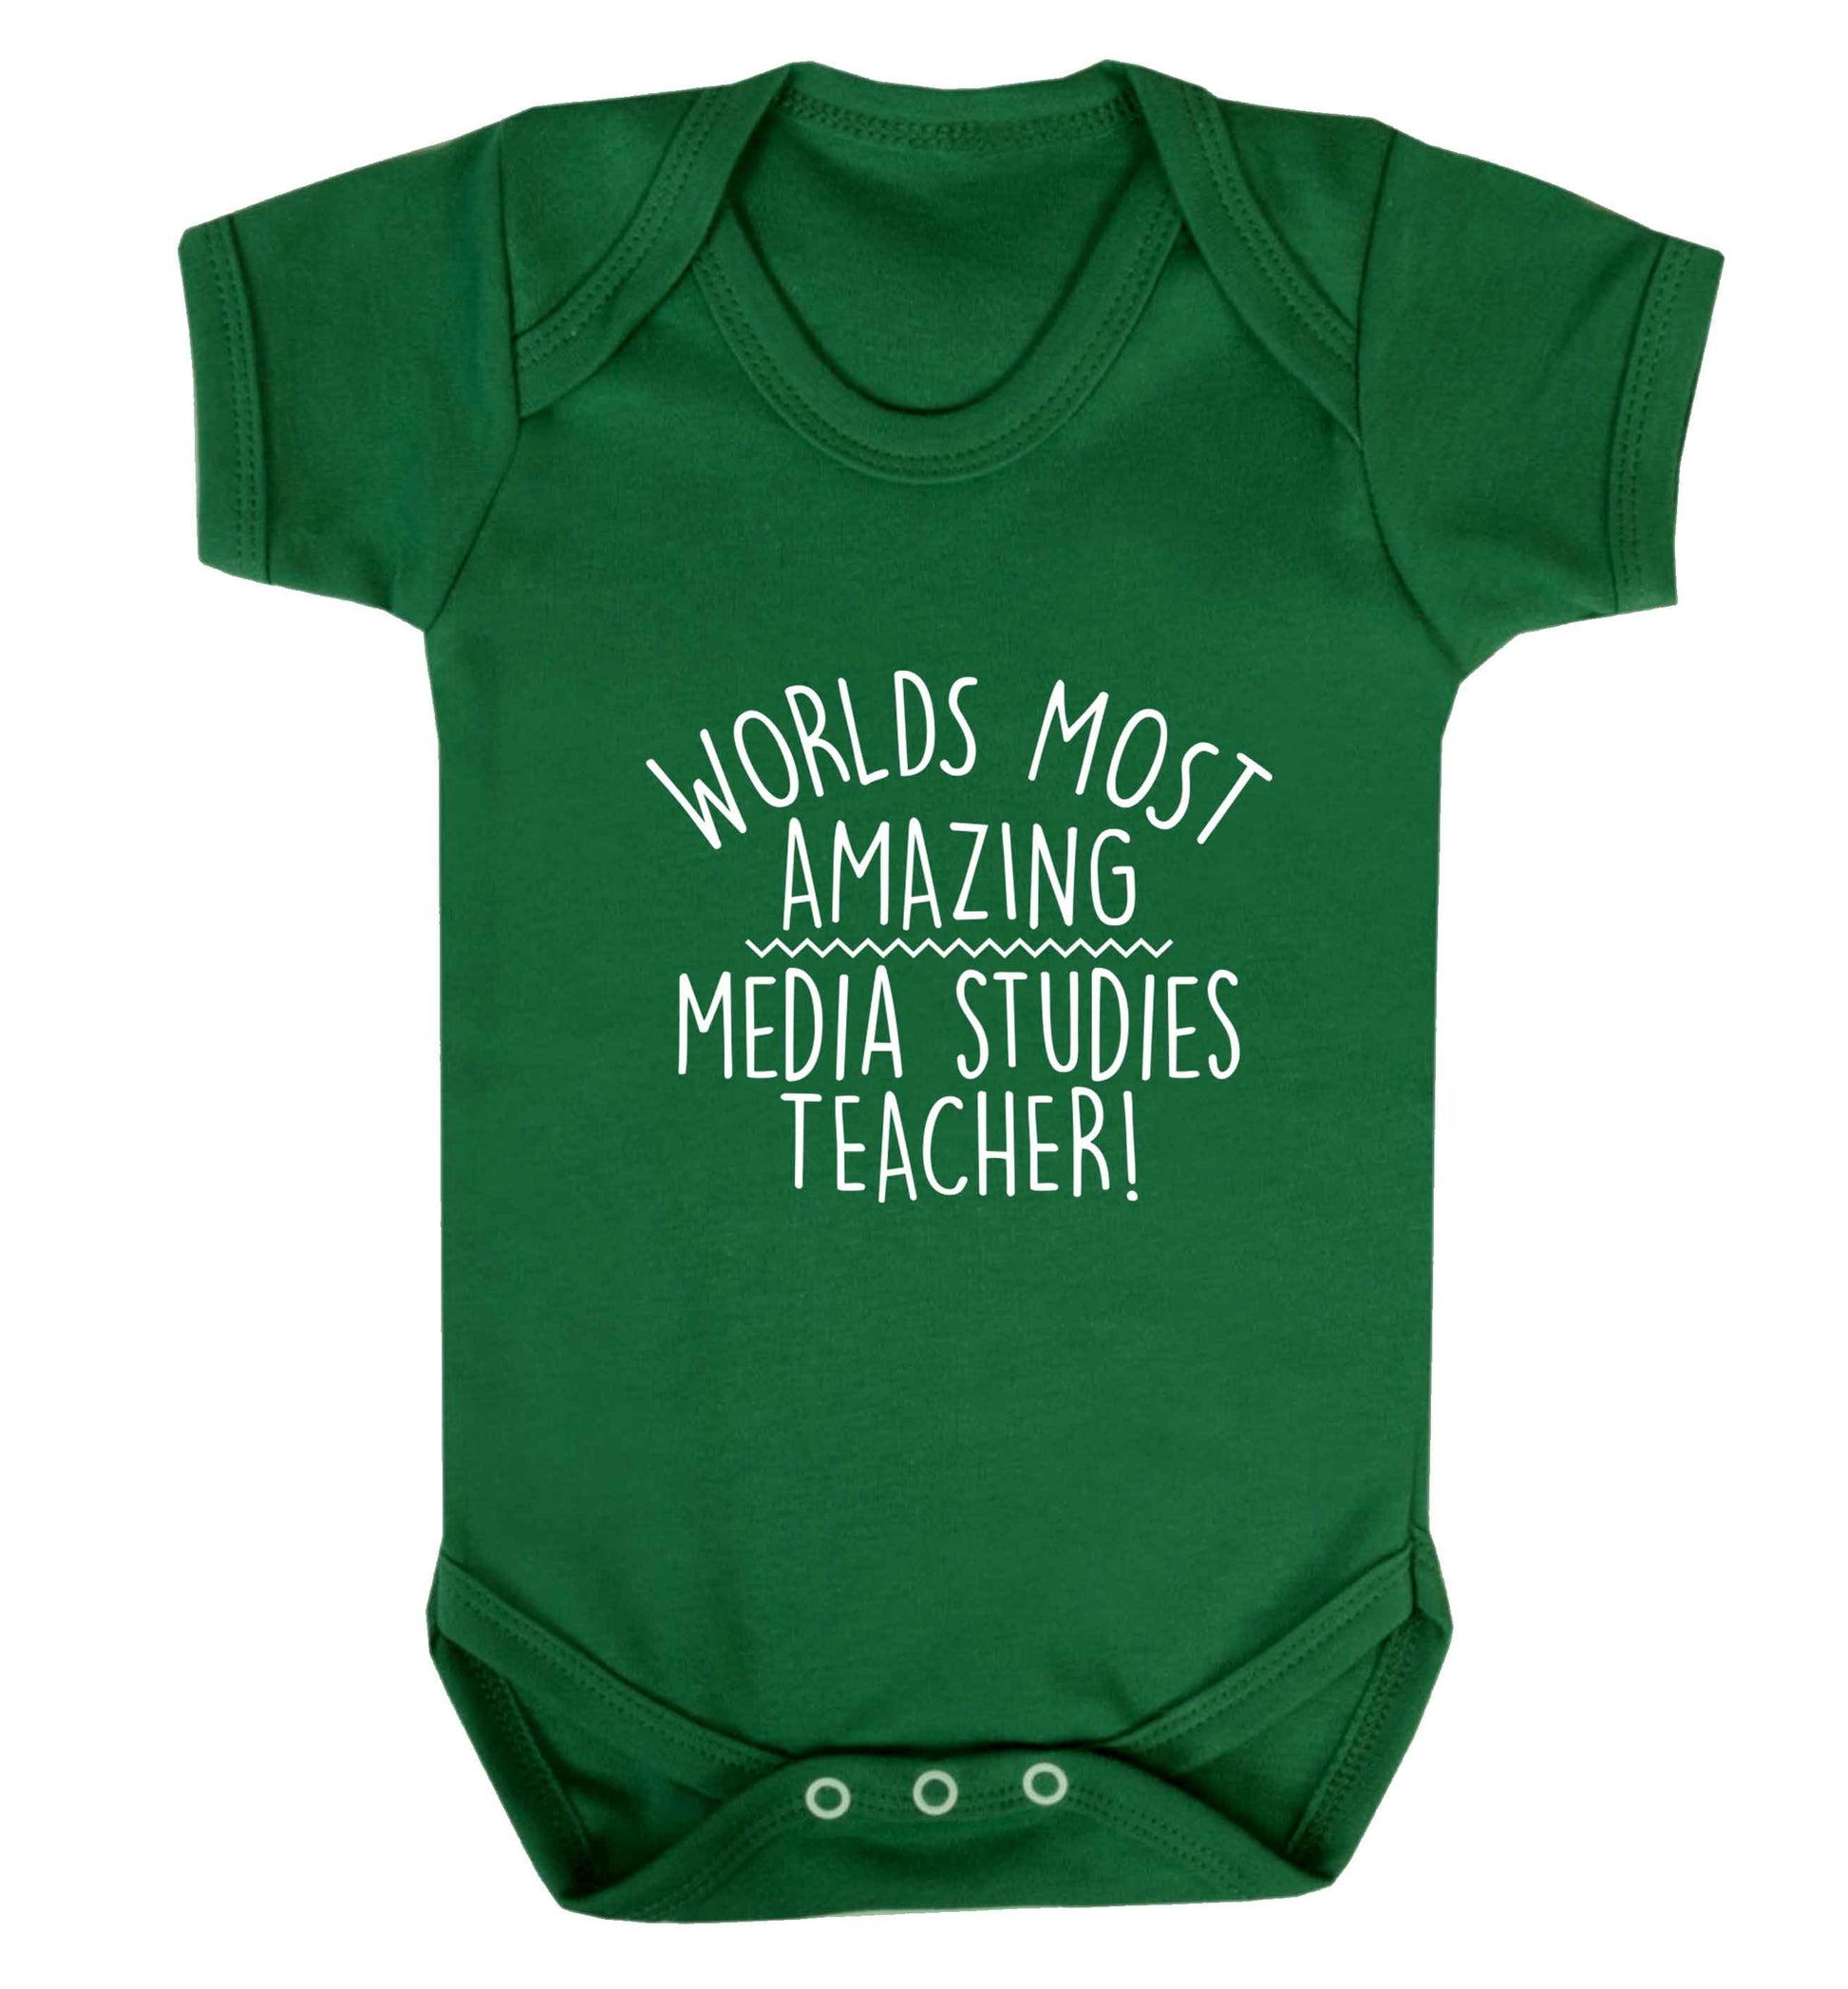 Worlds most amazing media studies teacher baby vest green 18-24 months